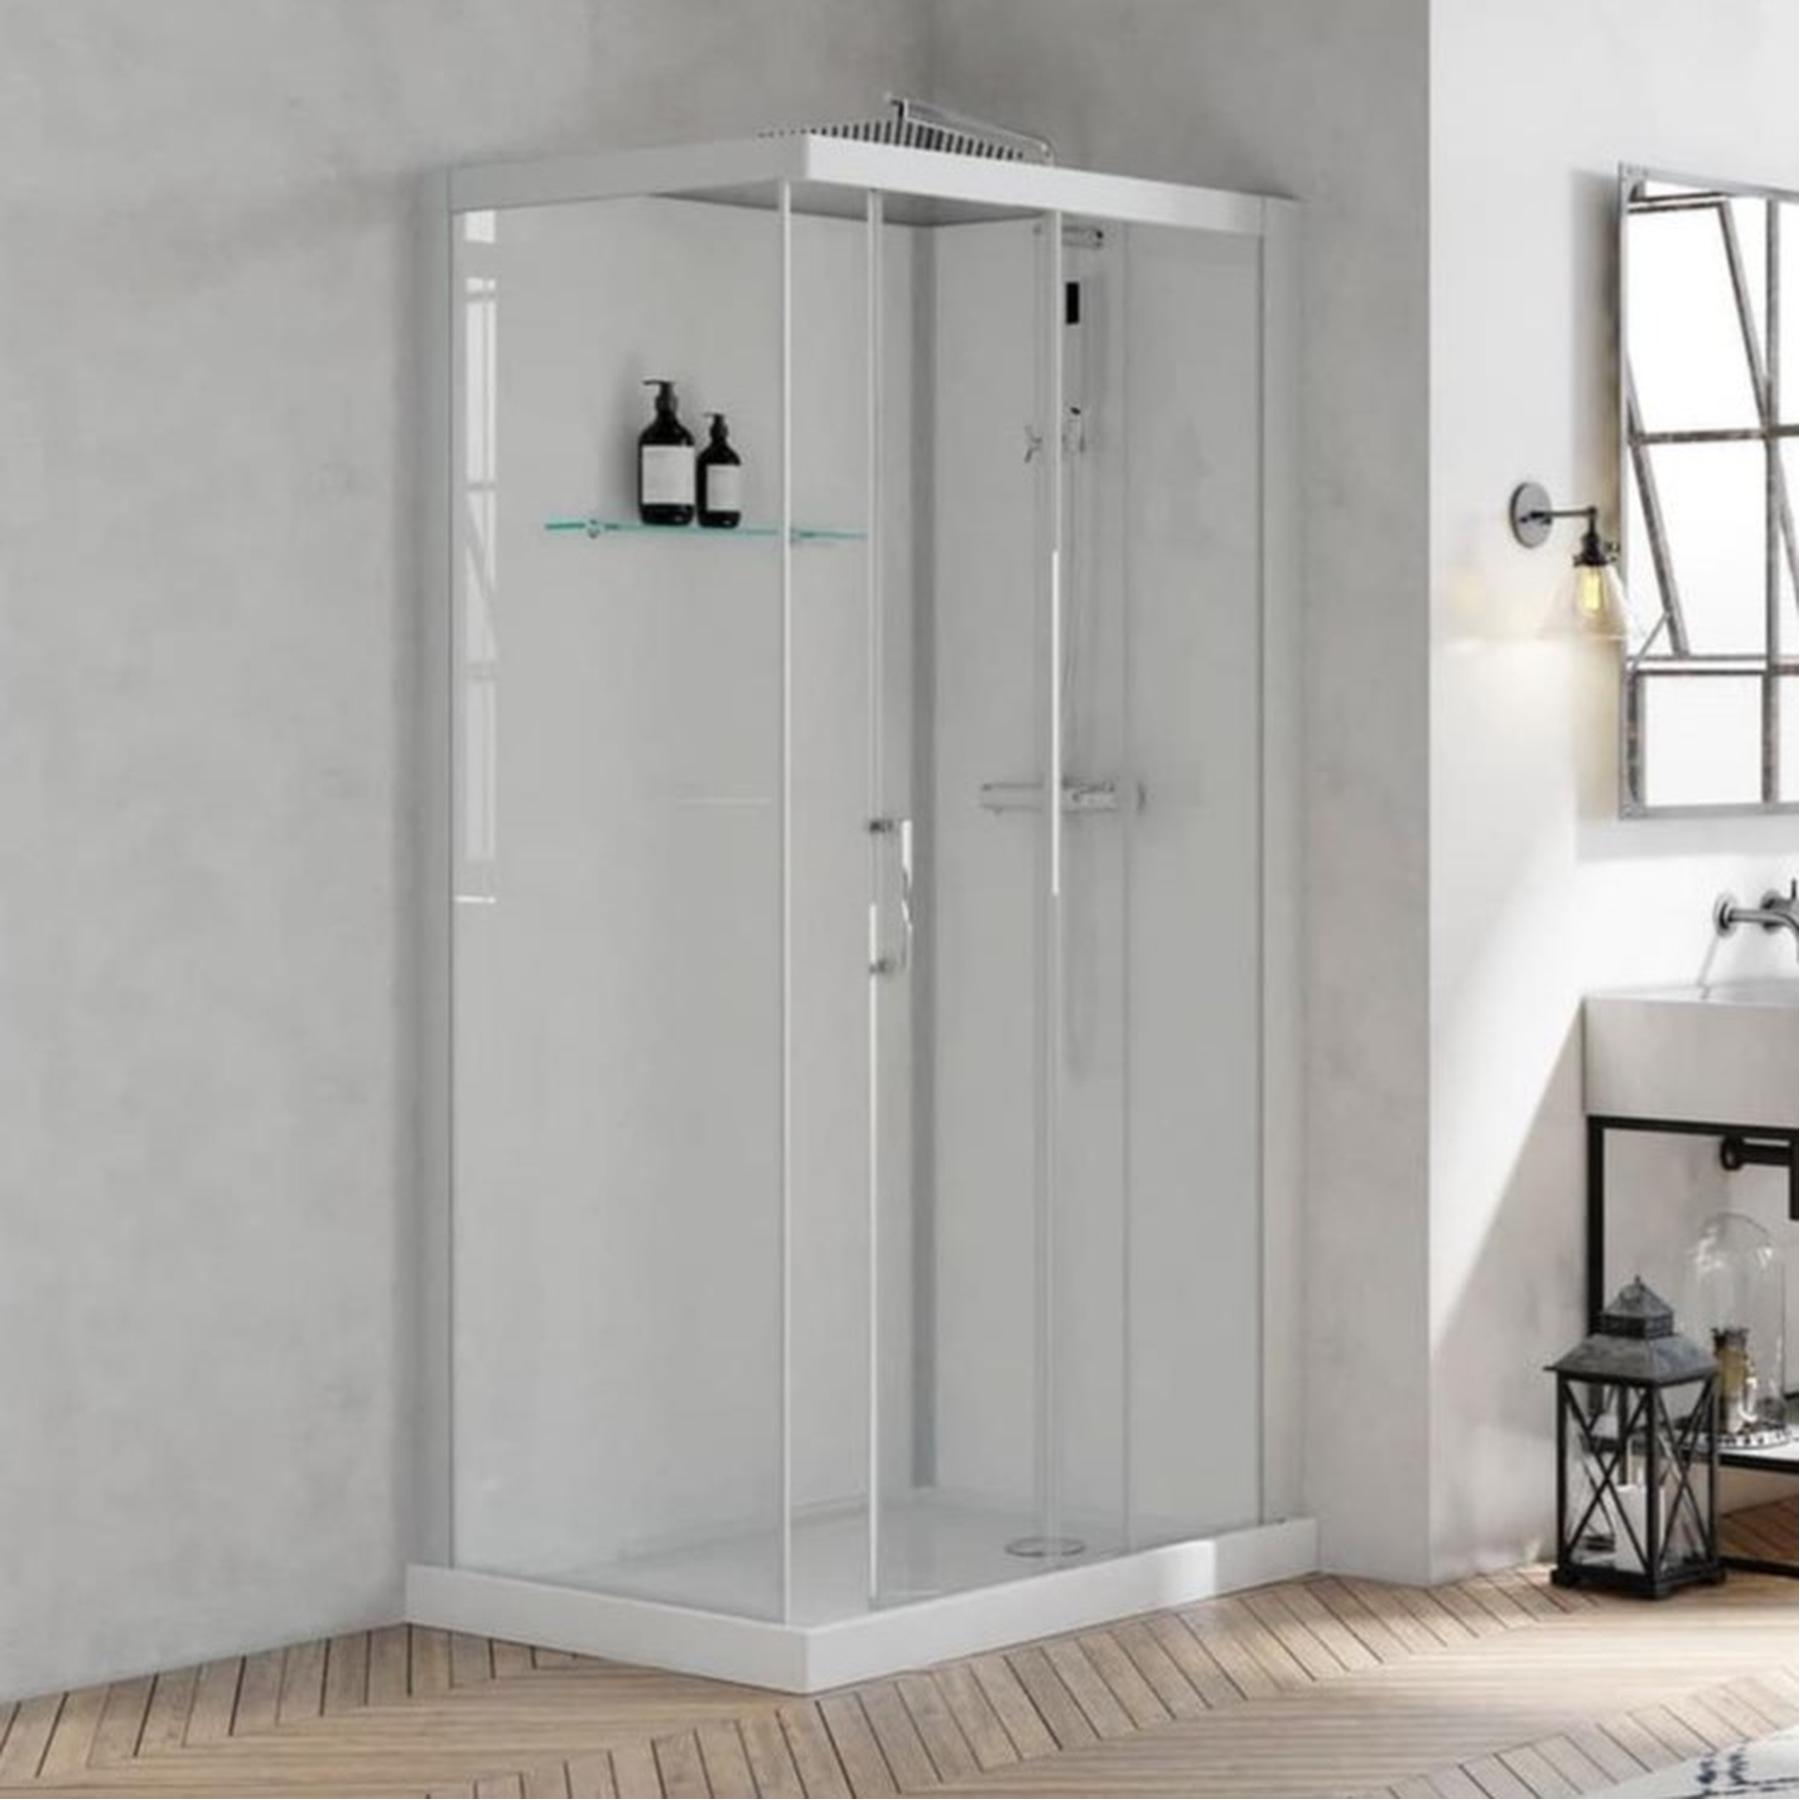 Cabine de douche BROOKLYN profilés gris clair porte coulissante 120x90 8.5 cm verre transparent mitigeur thermostatique fond en verre blanc